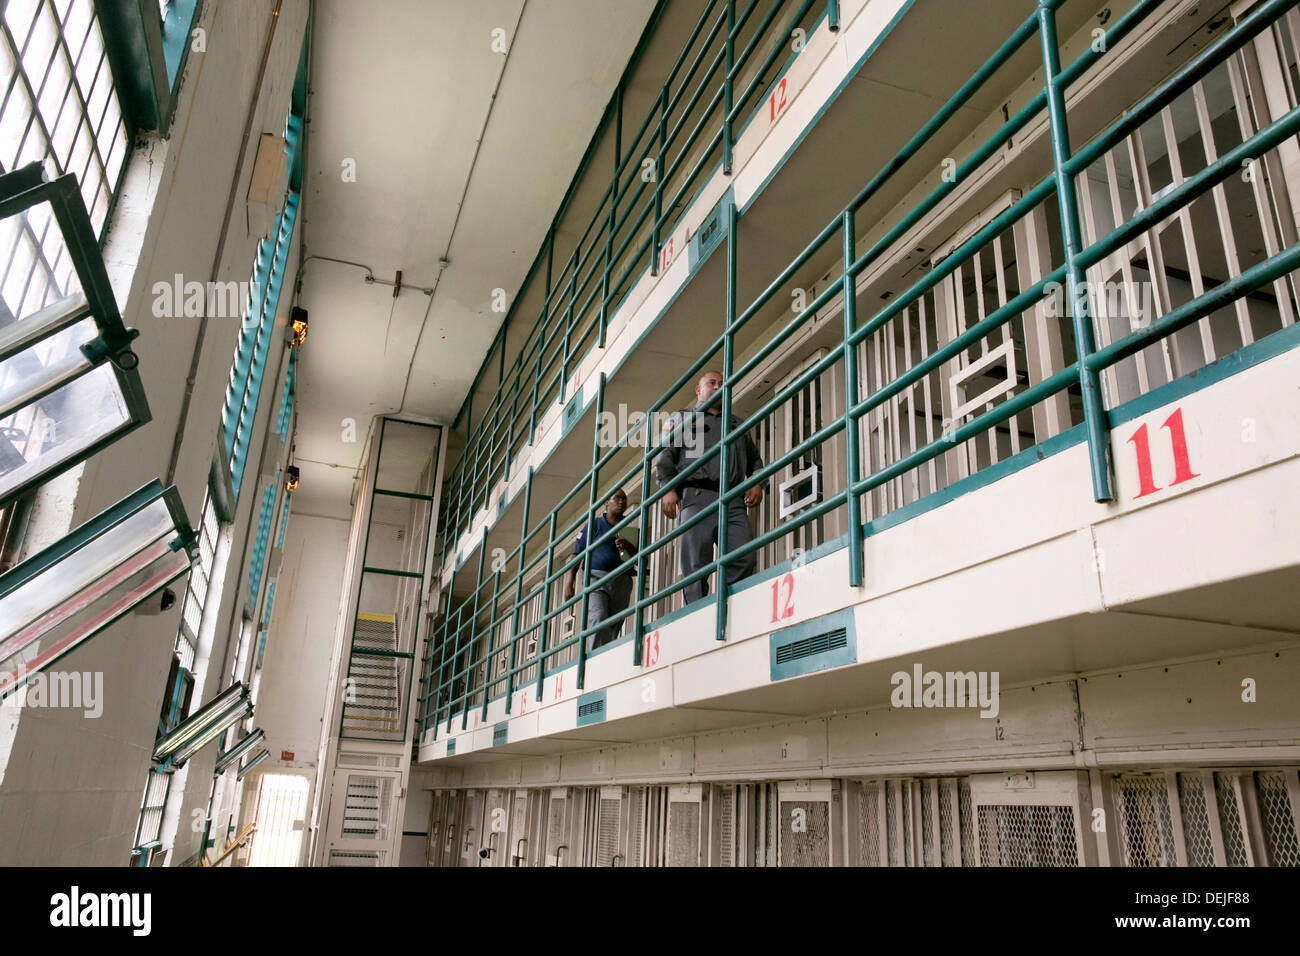 Guardie carcerarie all'interno di unità di prigione vicino a Houston, Texas a piedi attraverso le celle e fare di testa-conta dei prigionieri durante il giorno Foto Stock